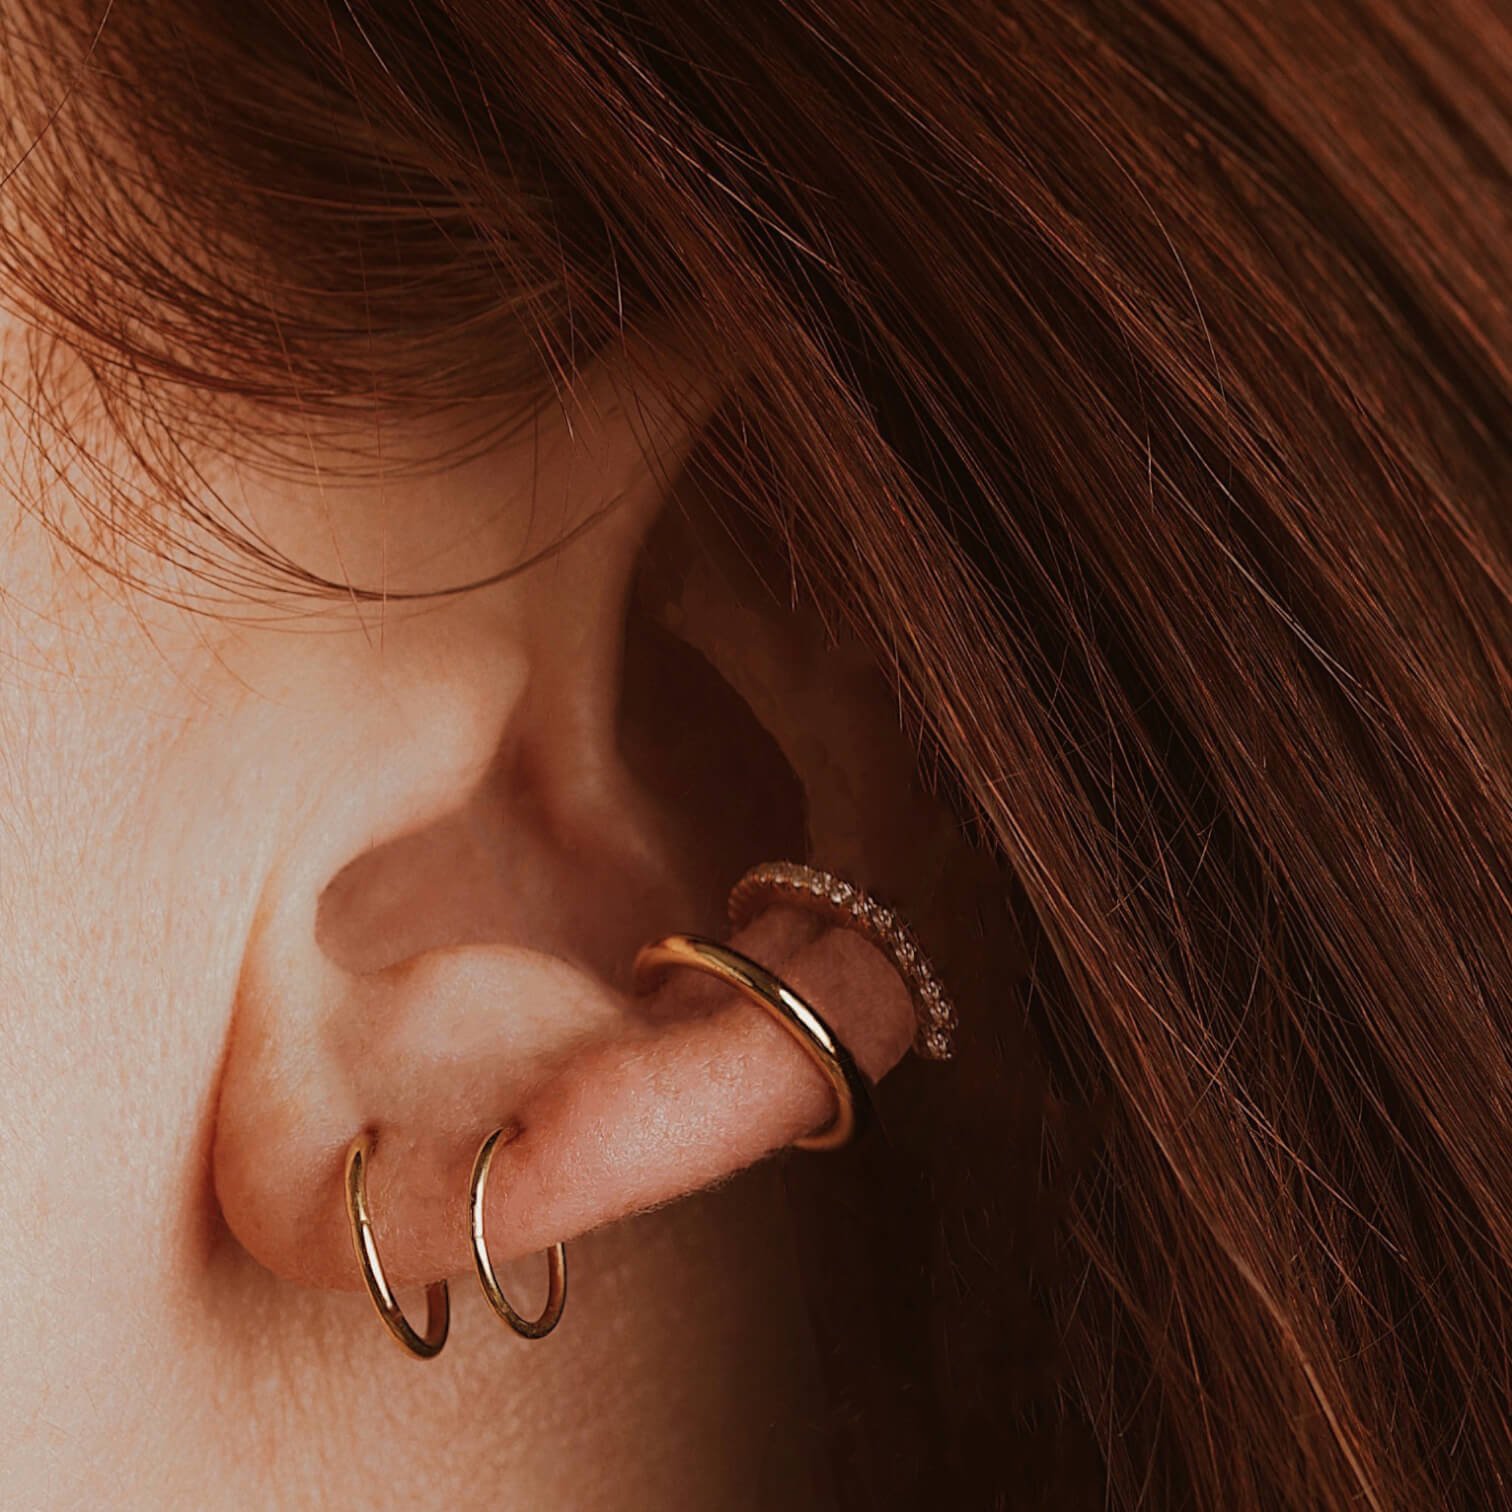 Gold Hoops Earrings Small Hoop Earrings Septum Ring Tiny Hoop  Etsy